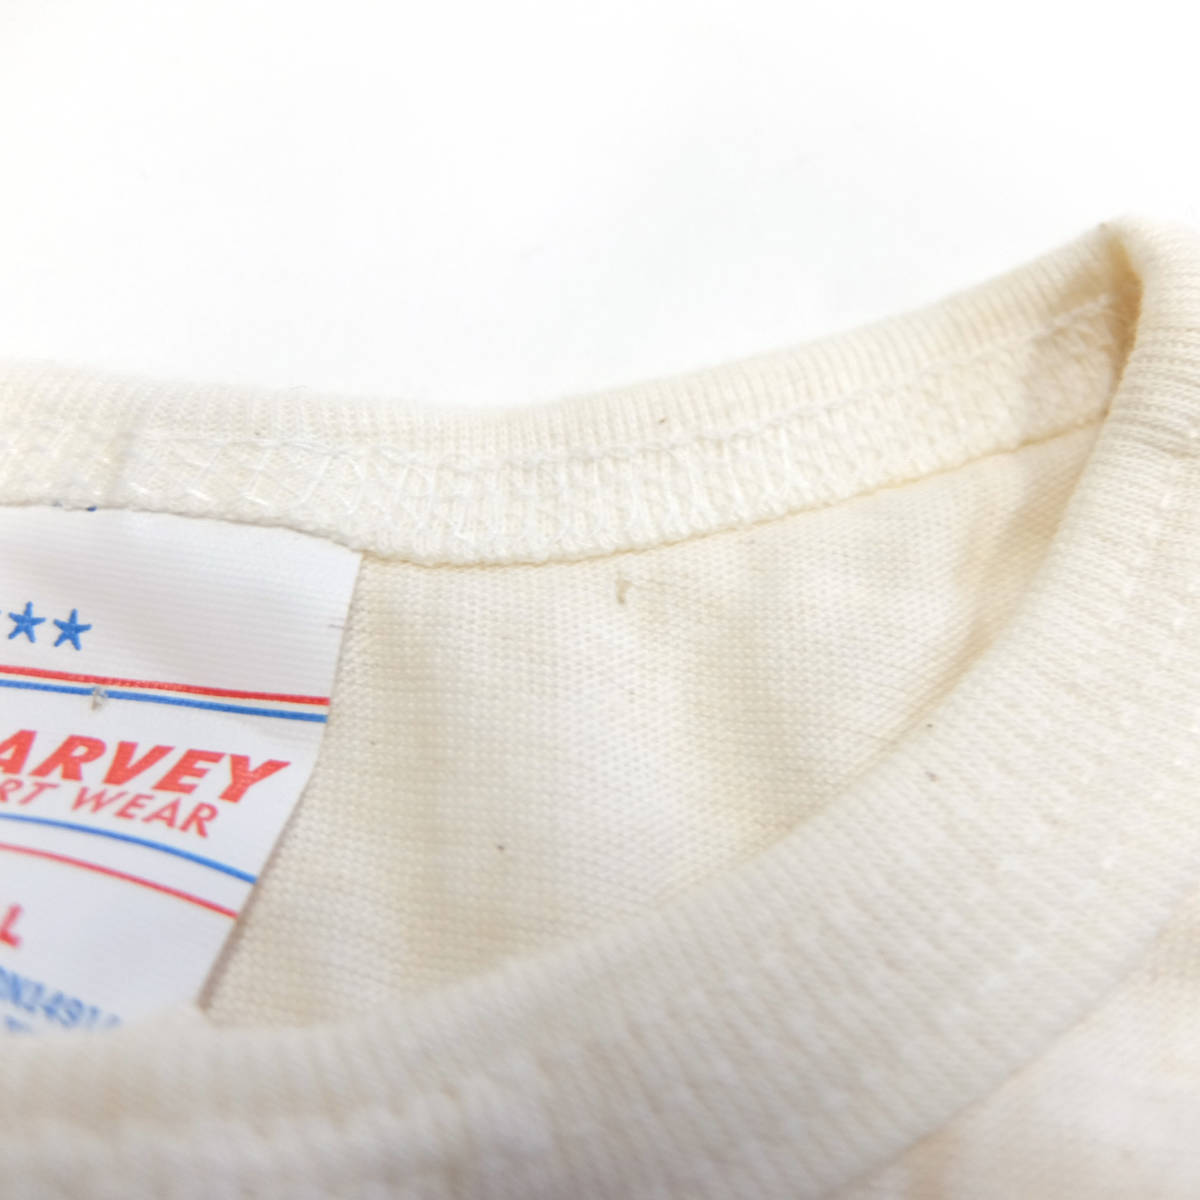 デッドストック USA製 HARVEY SPORT WEAR オフホワイト×バーガンディ ビンテージ ベースボール Tシャツ S 無地 セットイン 80's 五分袖_タグピン穴あり